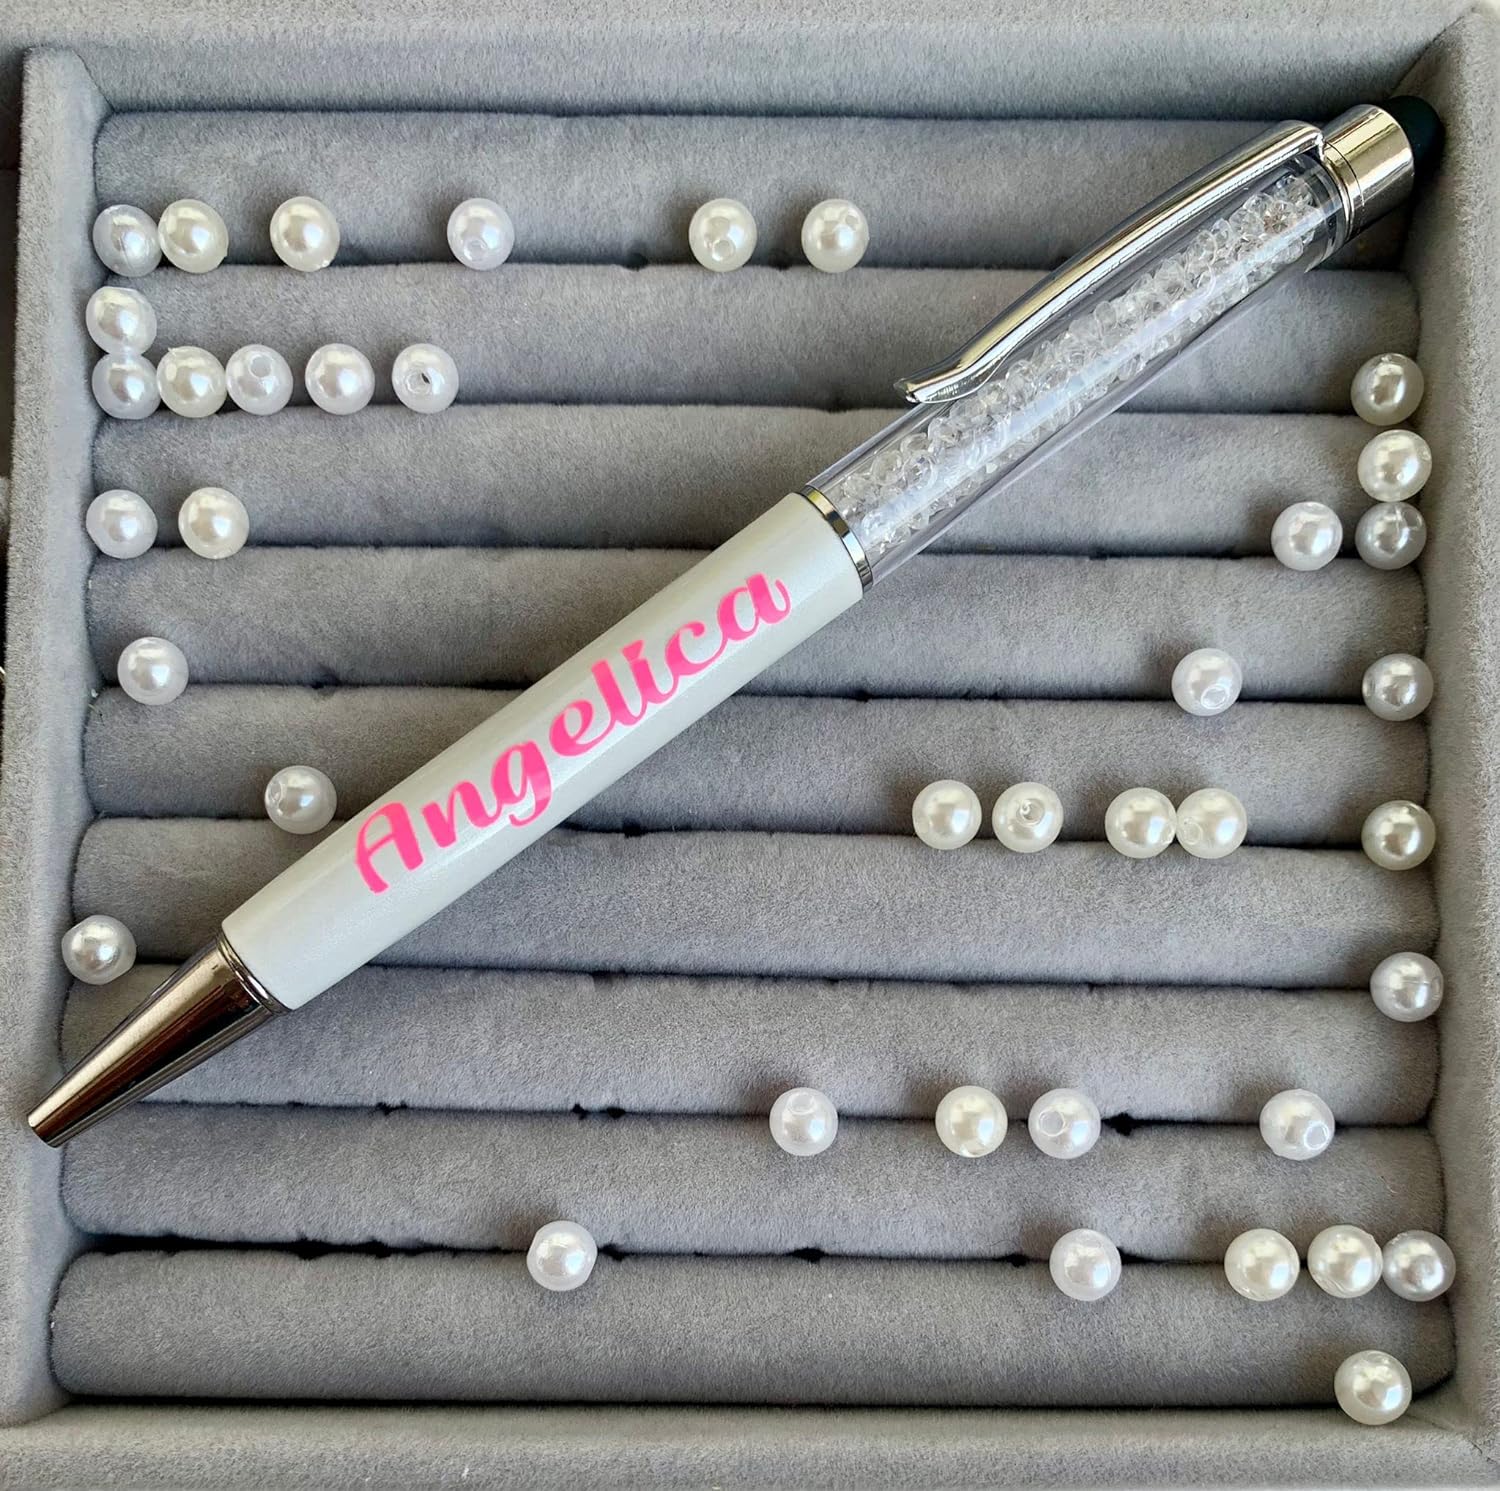 Penna stile Swarovsky personalizzata con il nome o la dedica. Con brillantini glitter alla moda. Un penna unica come idea regalo